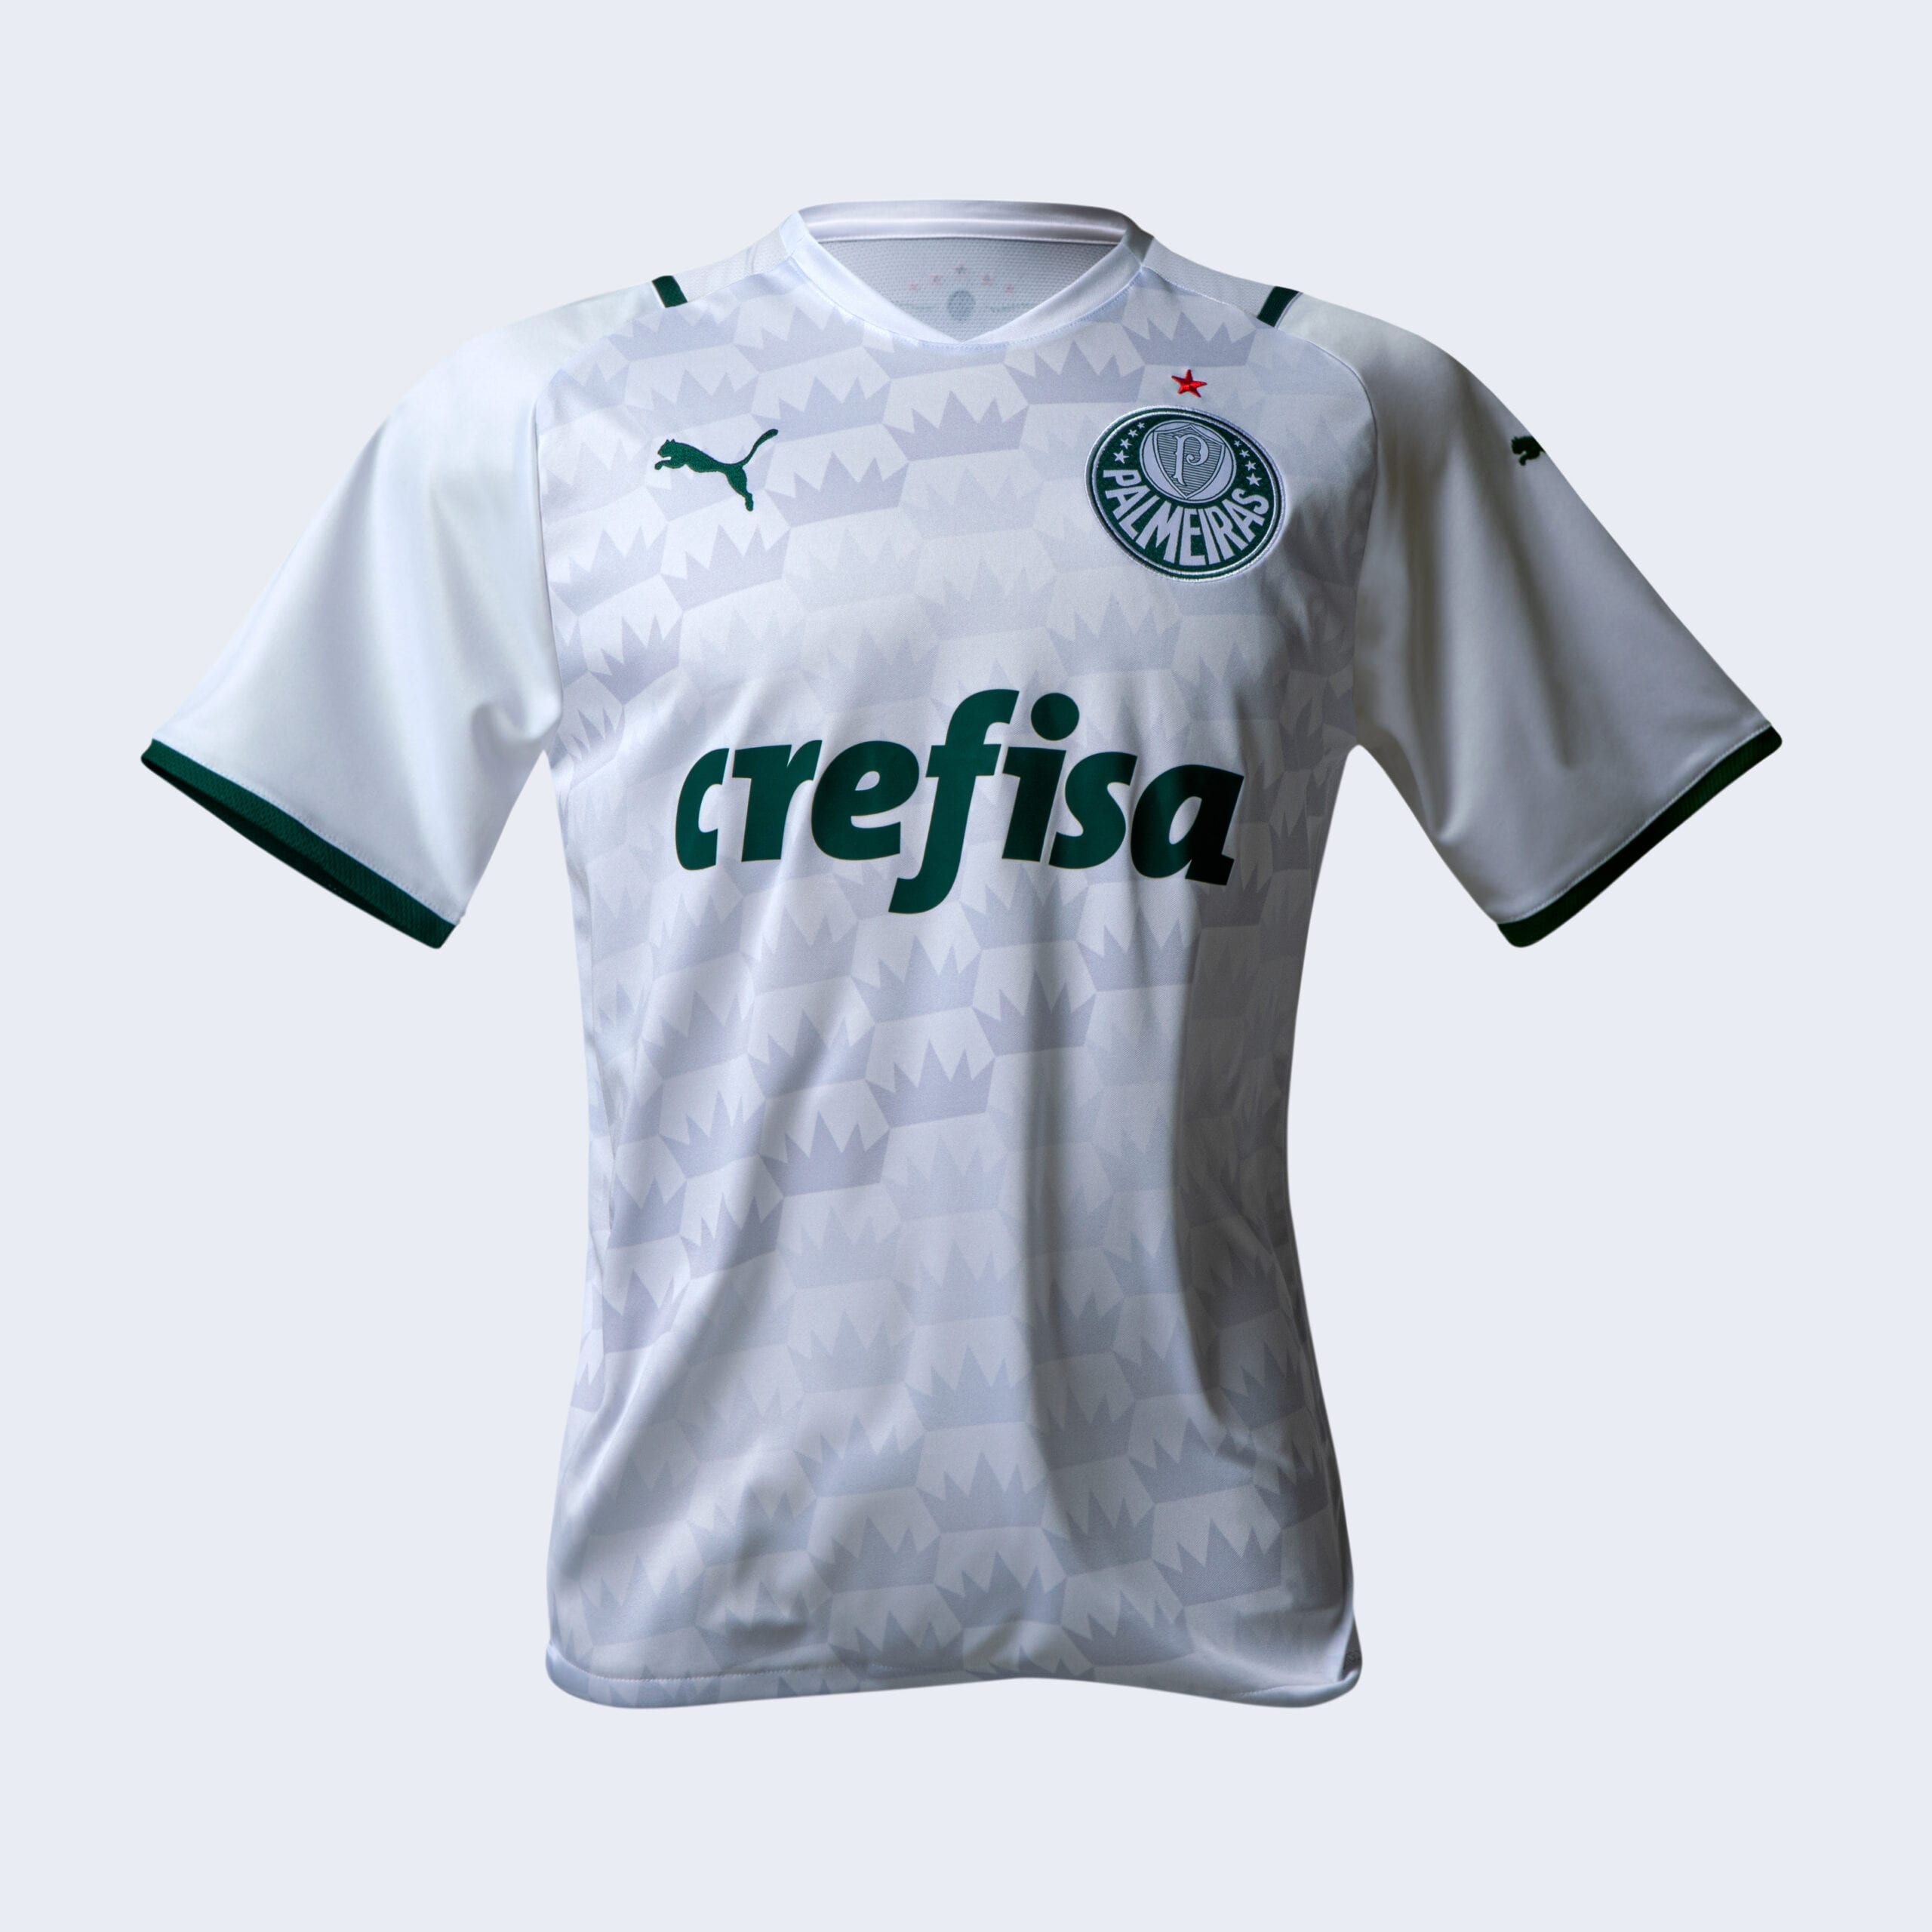 Nova camisa do Palmeiras é lançada! Veja fotos e vídeos oficiais